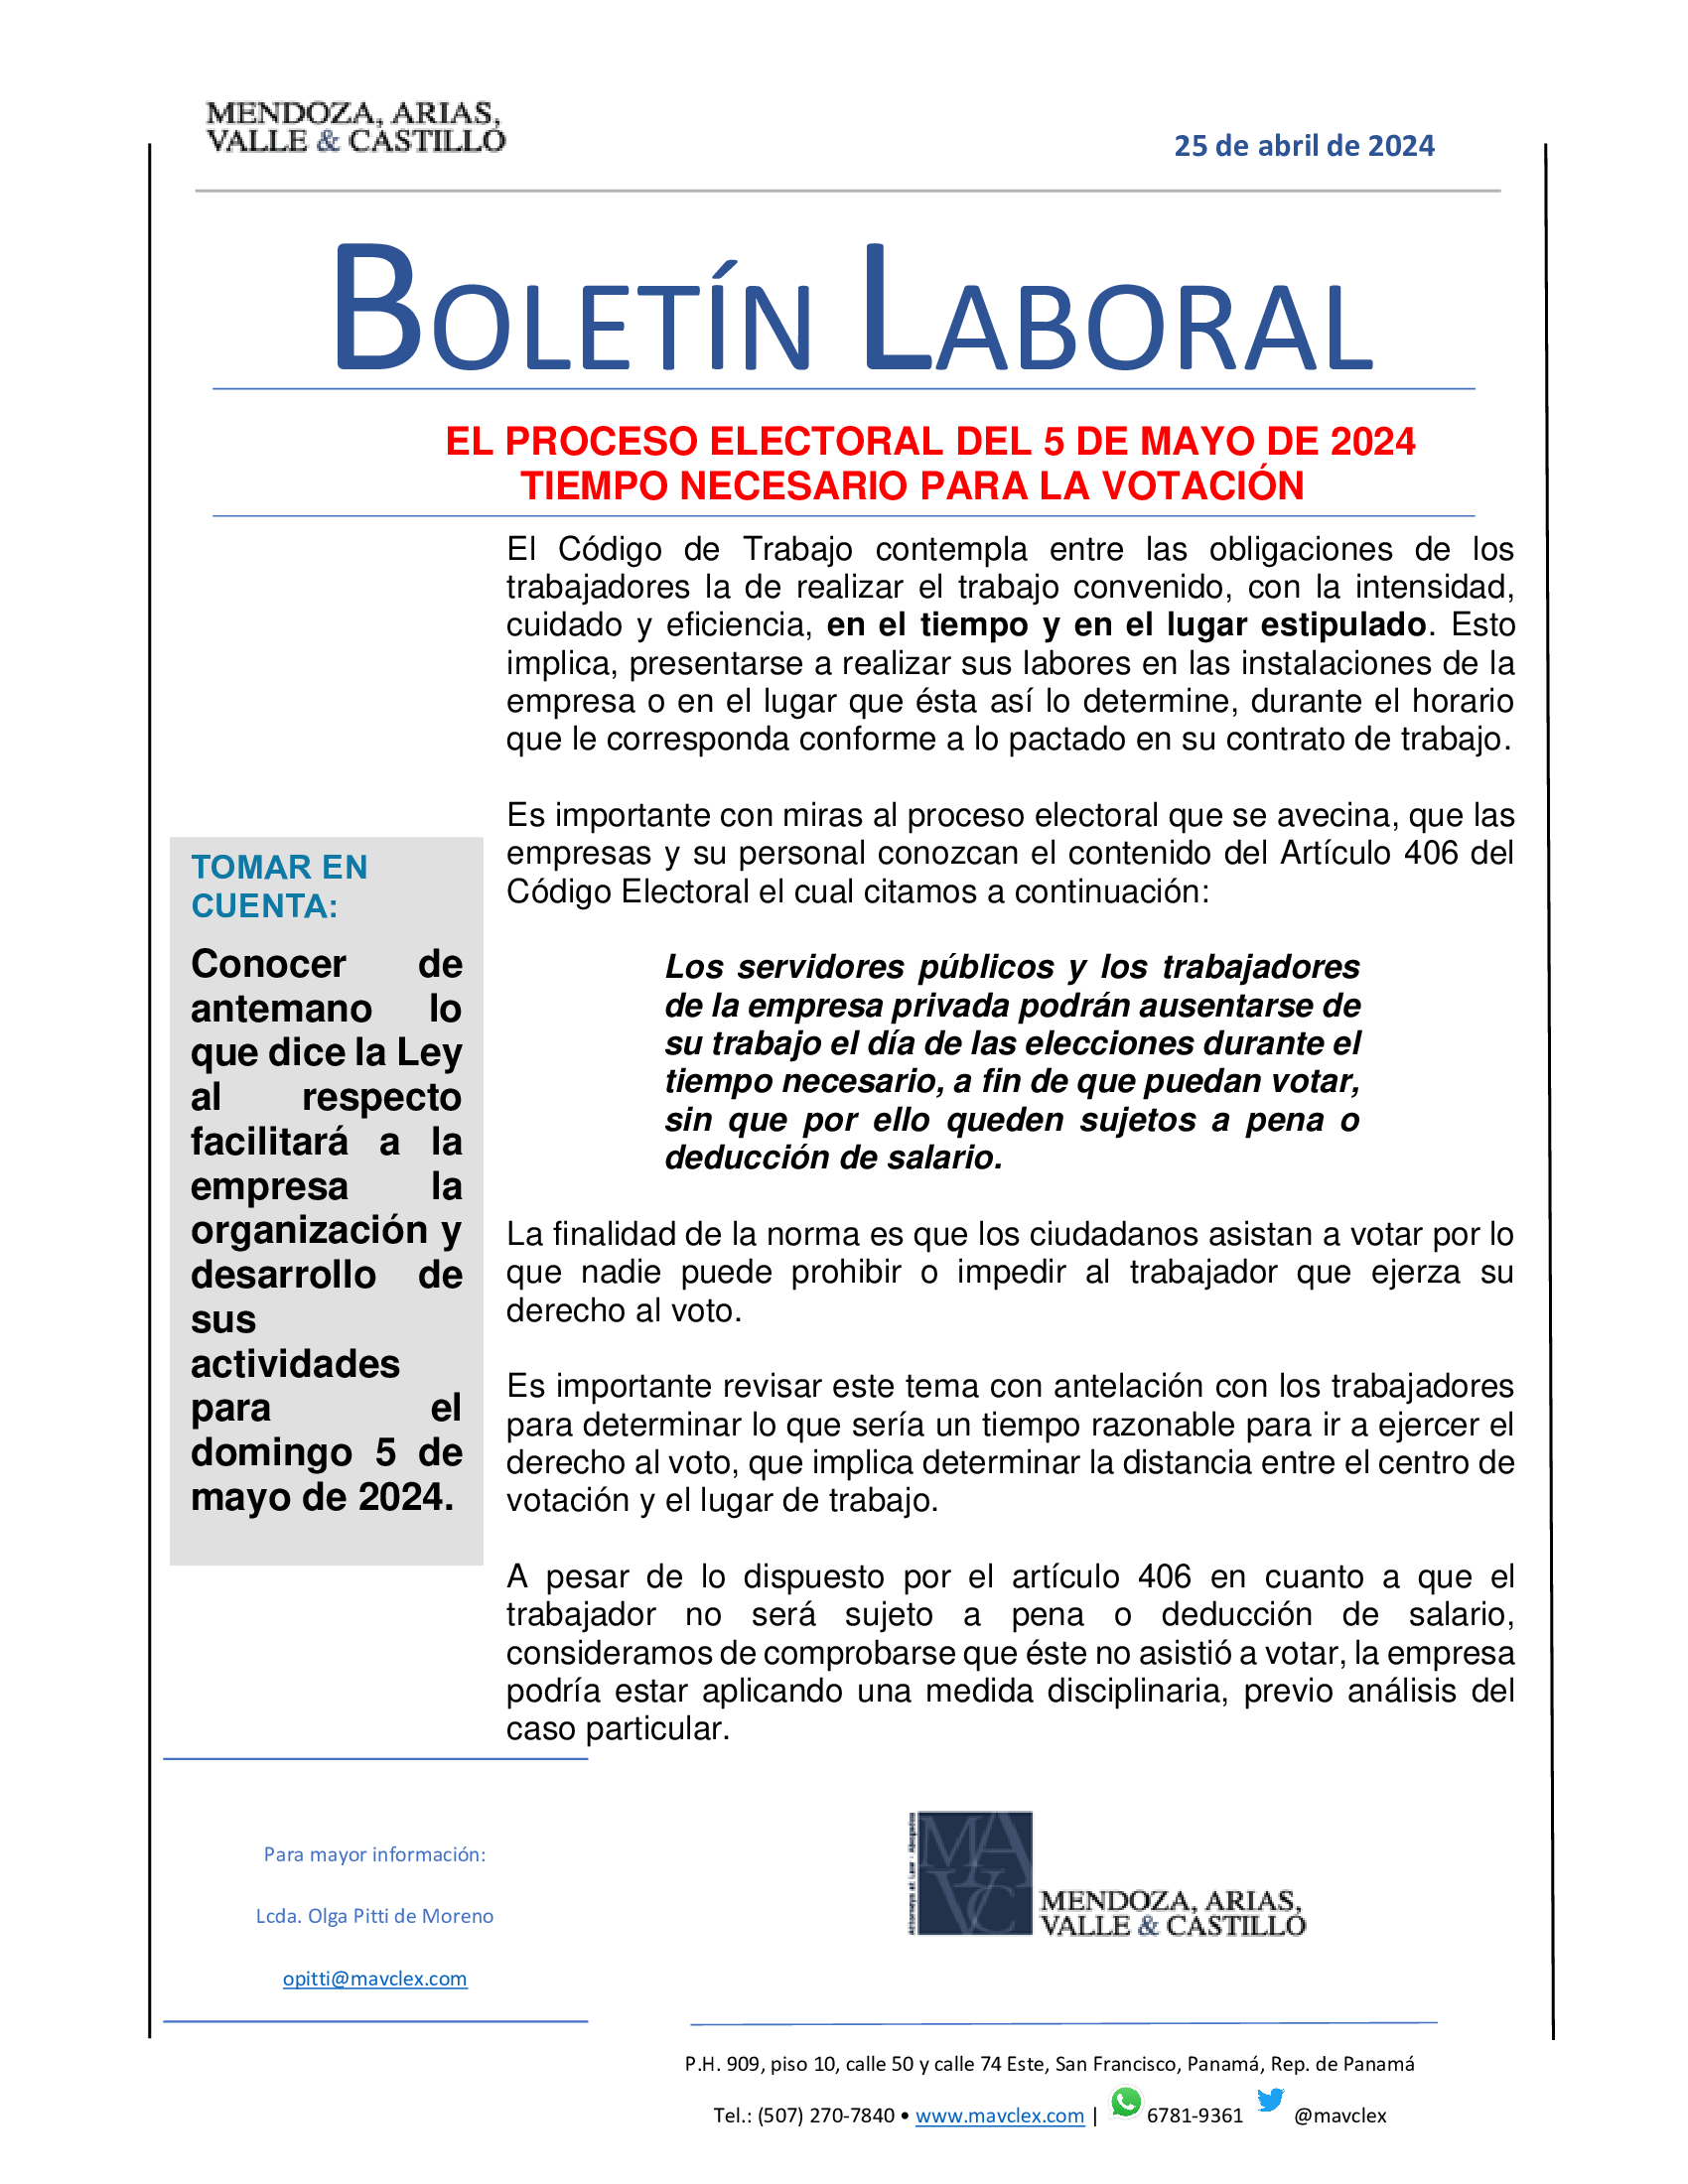 BOLETIN-LABORAL-25-de-abril-de-2024-El-proceso-Electoral-del-5-de-mayo-de-2024